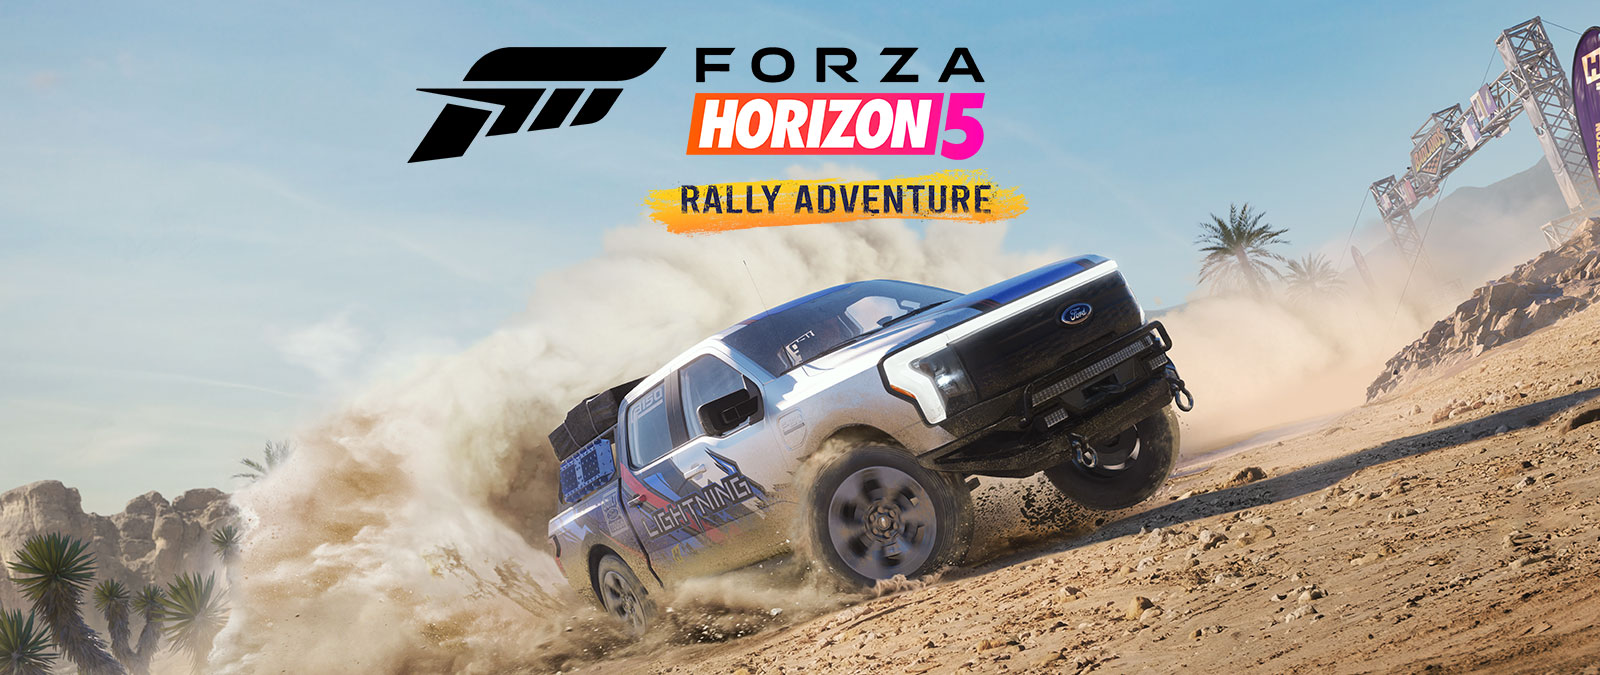 Λογότυπο Forza, Forza Horizon 5, Rally Adventure, ένα Ford 150 Lightning σηκώνει σκόνη σε ένα χωματόδρομο.